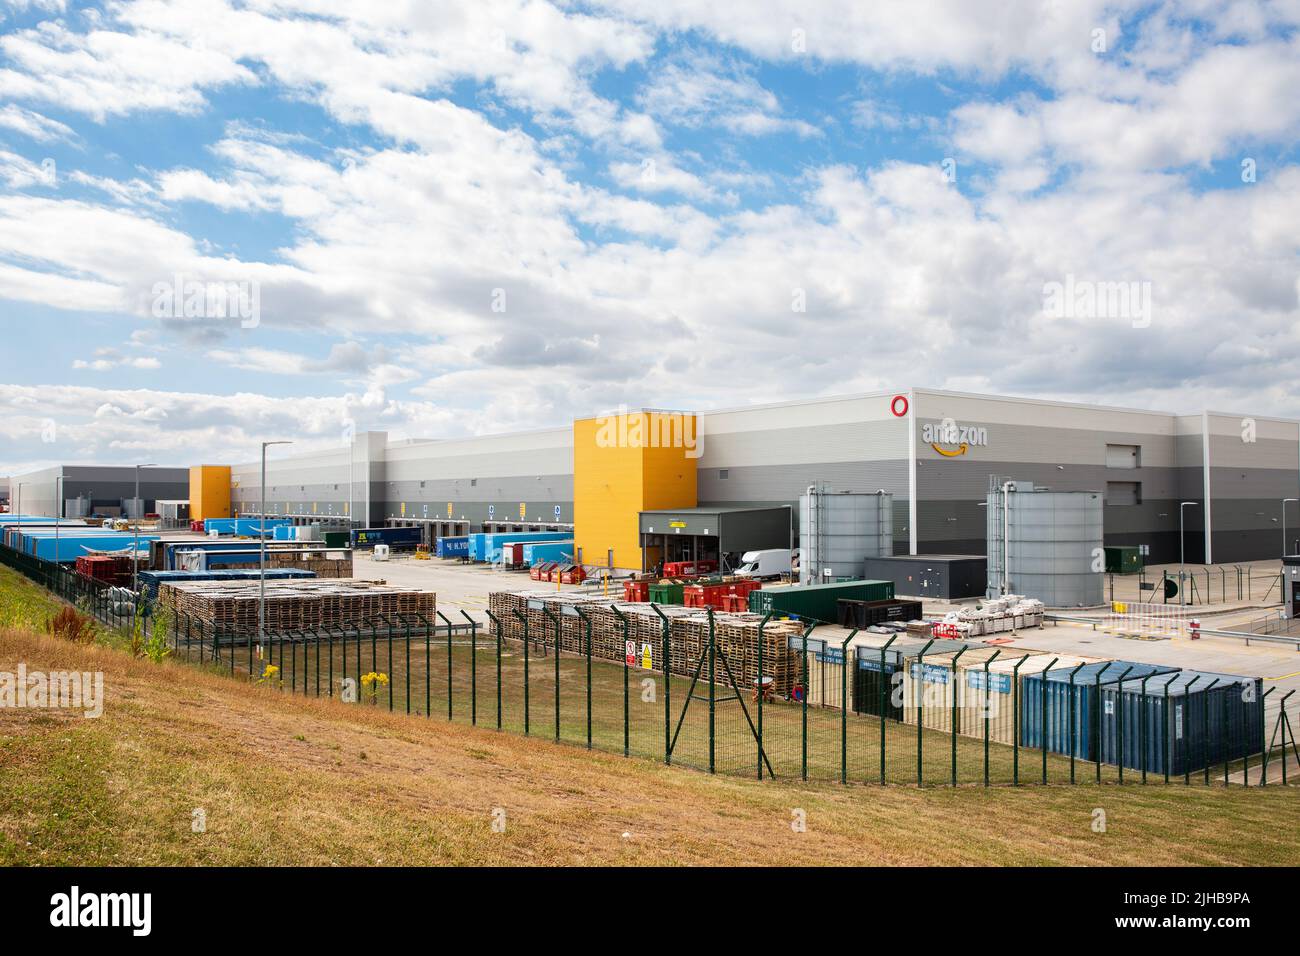 EAST MIDLANDS GATEWAY, Royaume-Uni - 15 JUILLET 2022 Grand centre de distribution d'entrepôt Amazon avec baies de chargement Banque D'Images